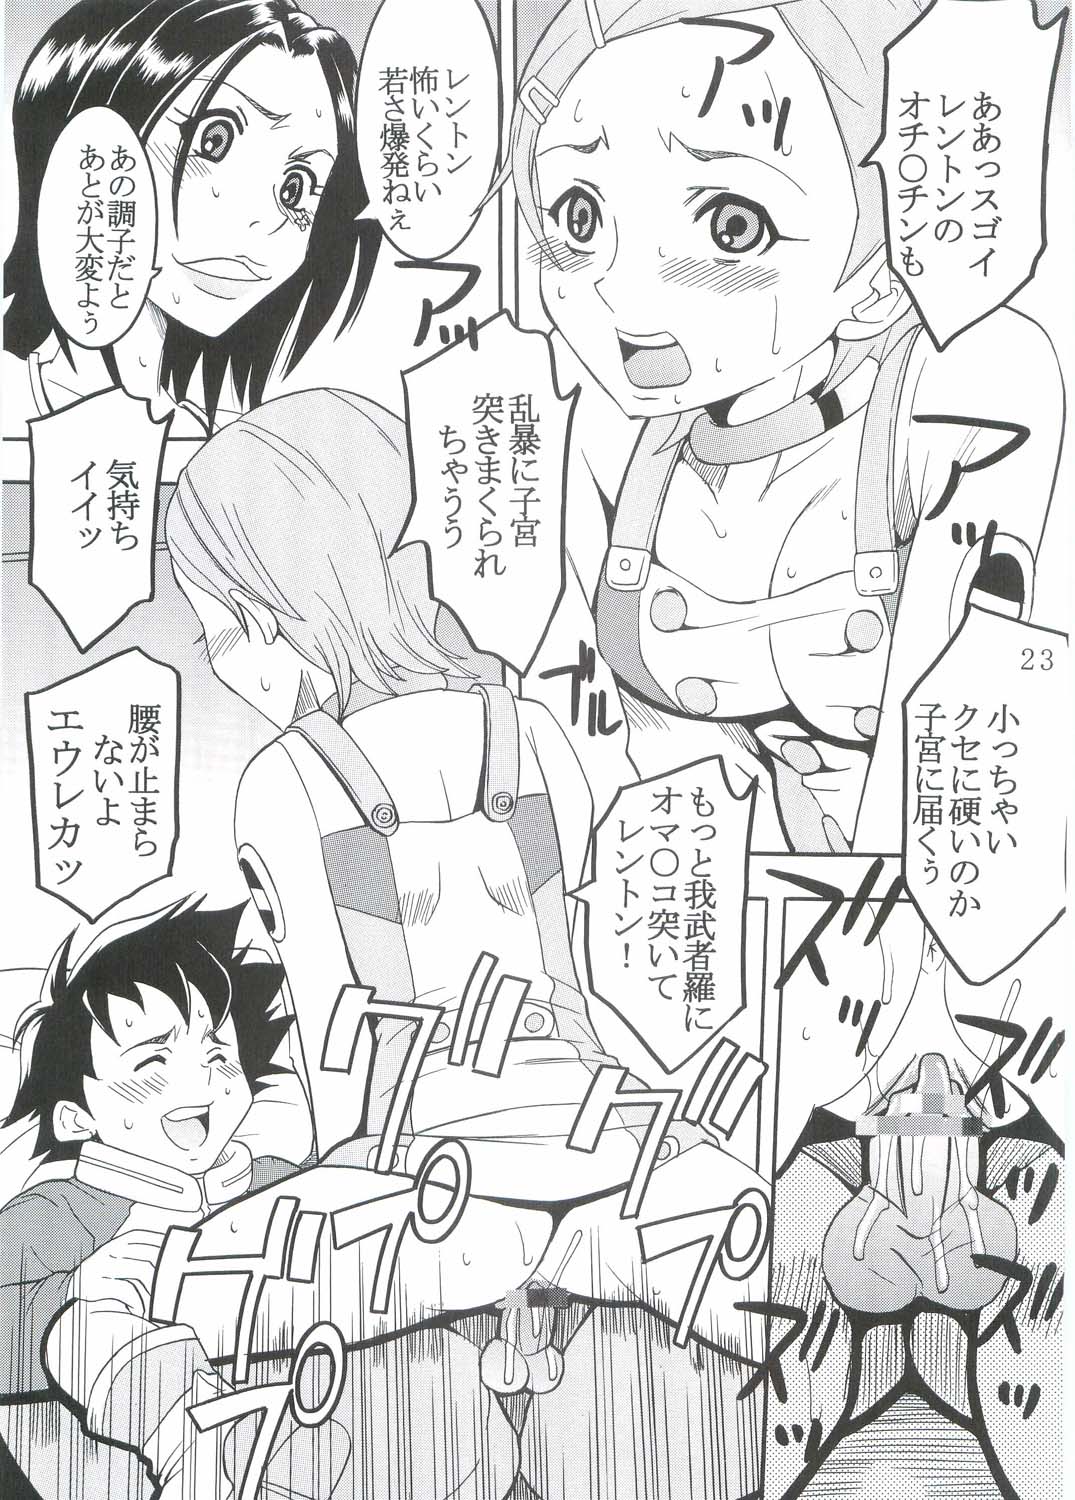 [St. Rio (Kitty, Kouenji Rei)] Ura ray-out (Eureka seveN) page 24 full